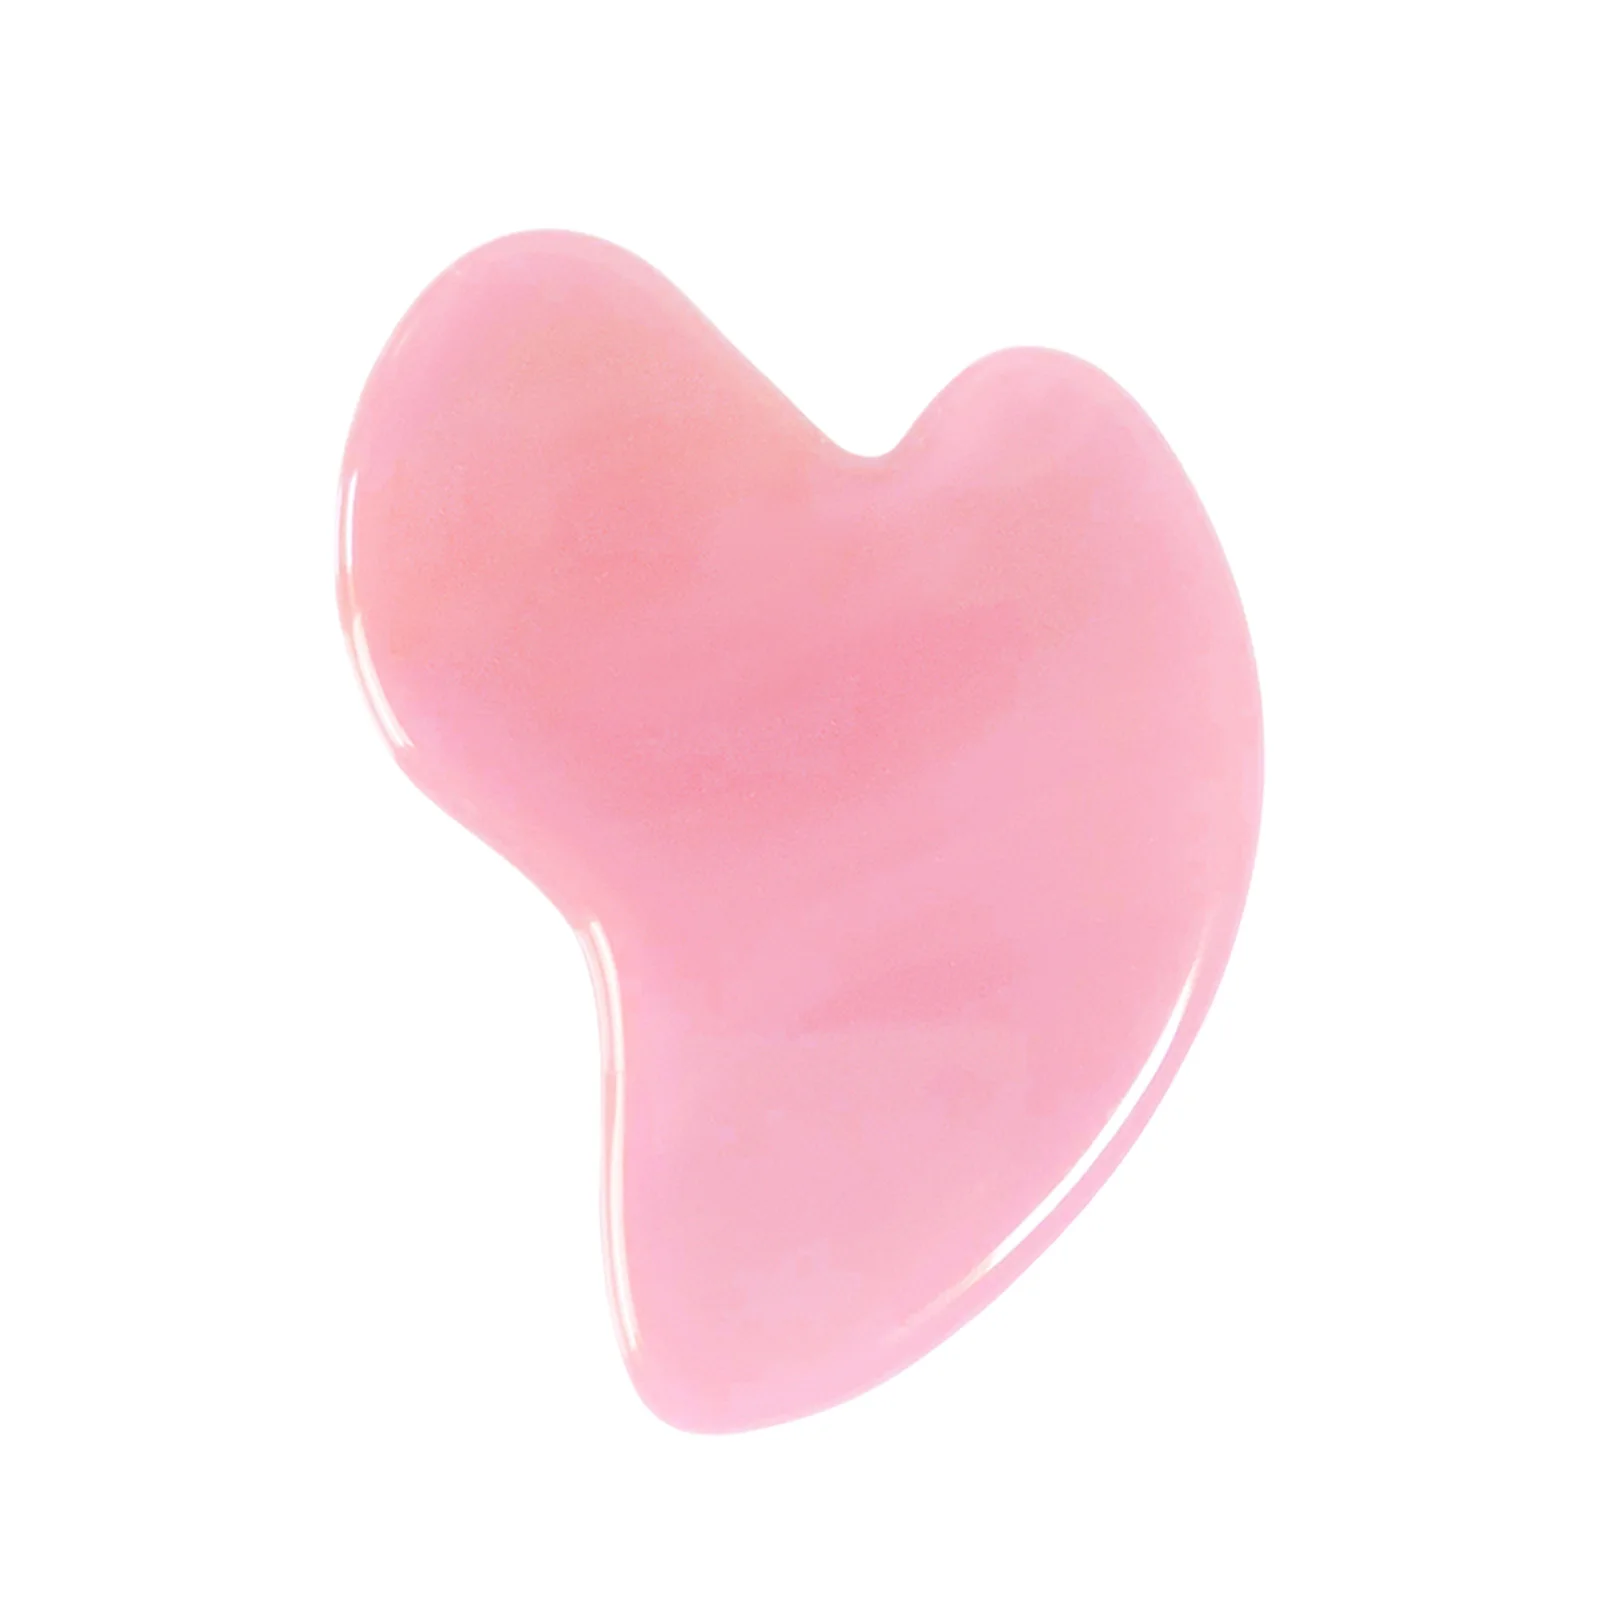 

ALIVER Pink Jade Gua Sha Stones Facial Tool Natural Jade Stone Guasha Board For SPA Gua Sha Scraping Massage Tool on Face